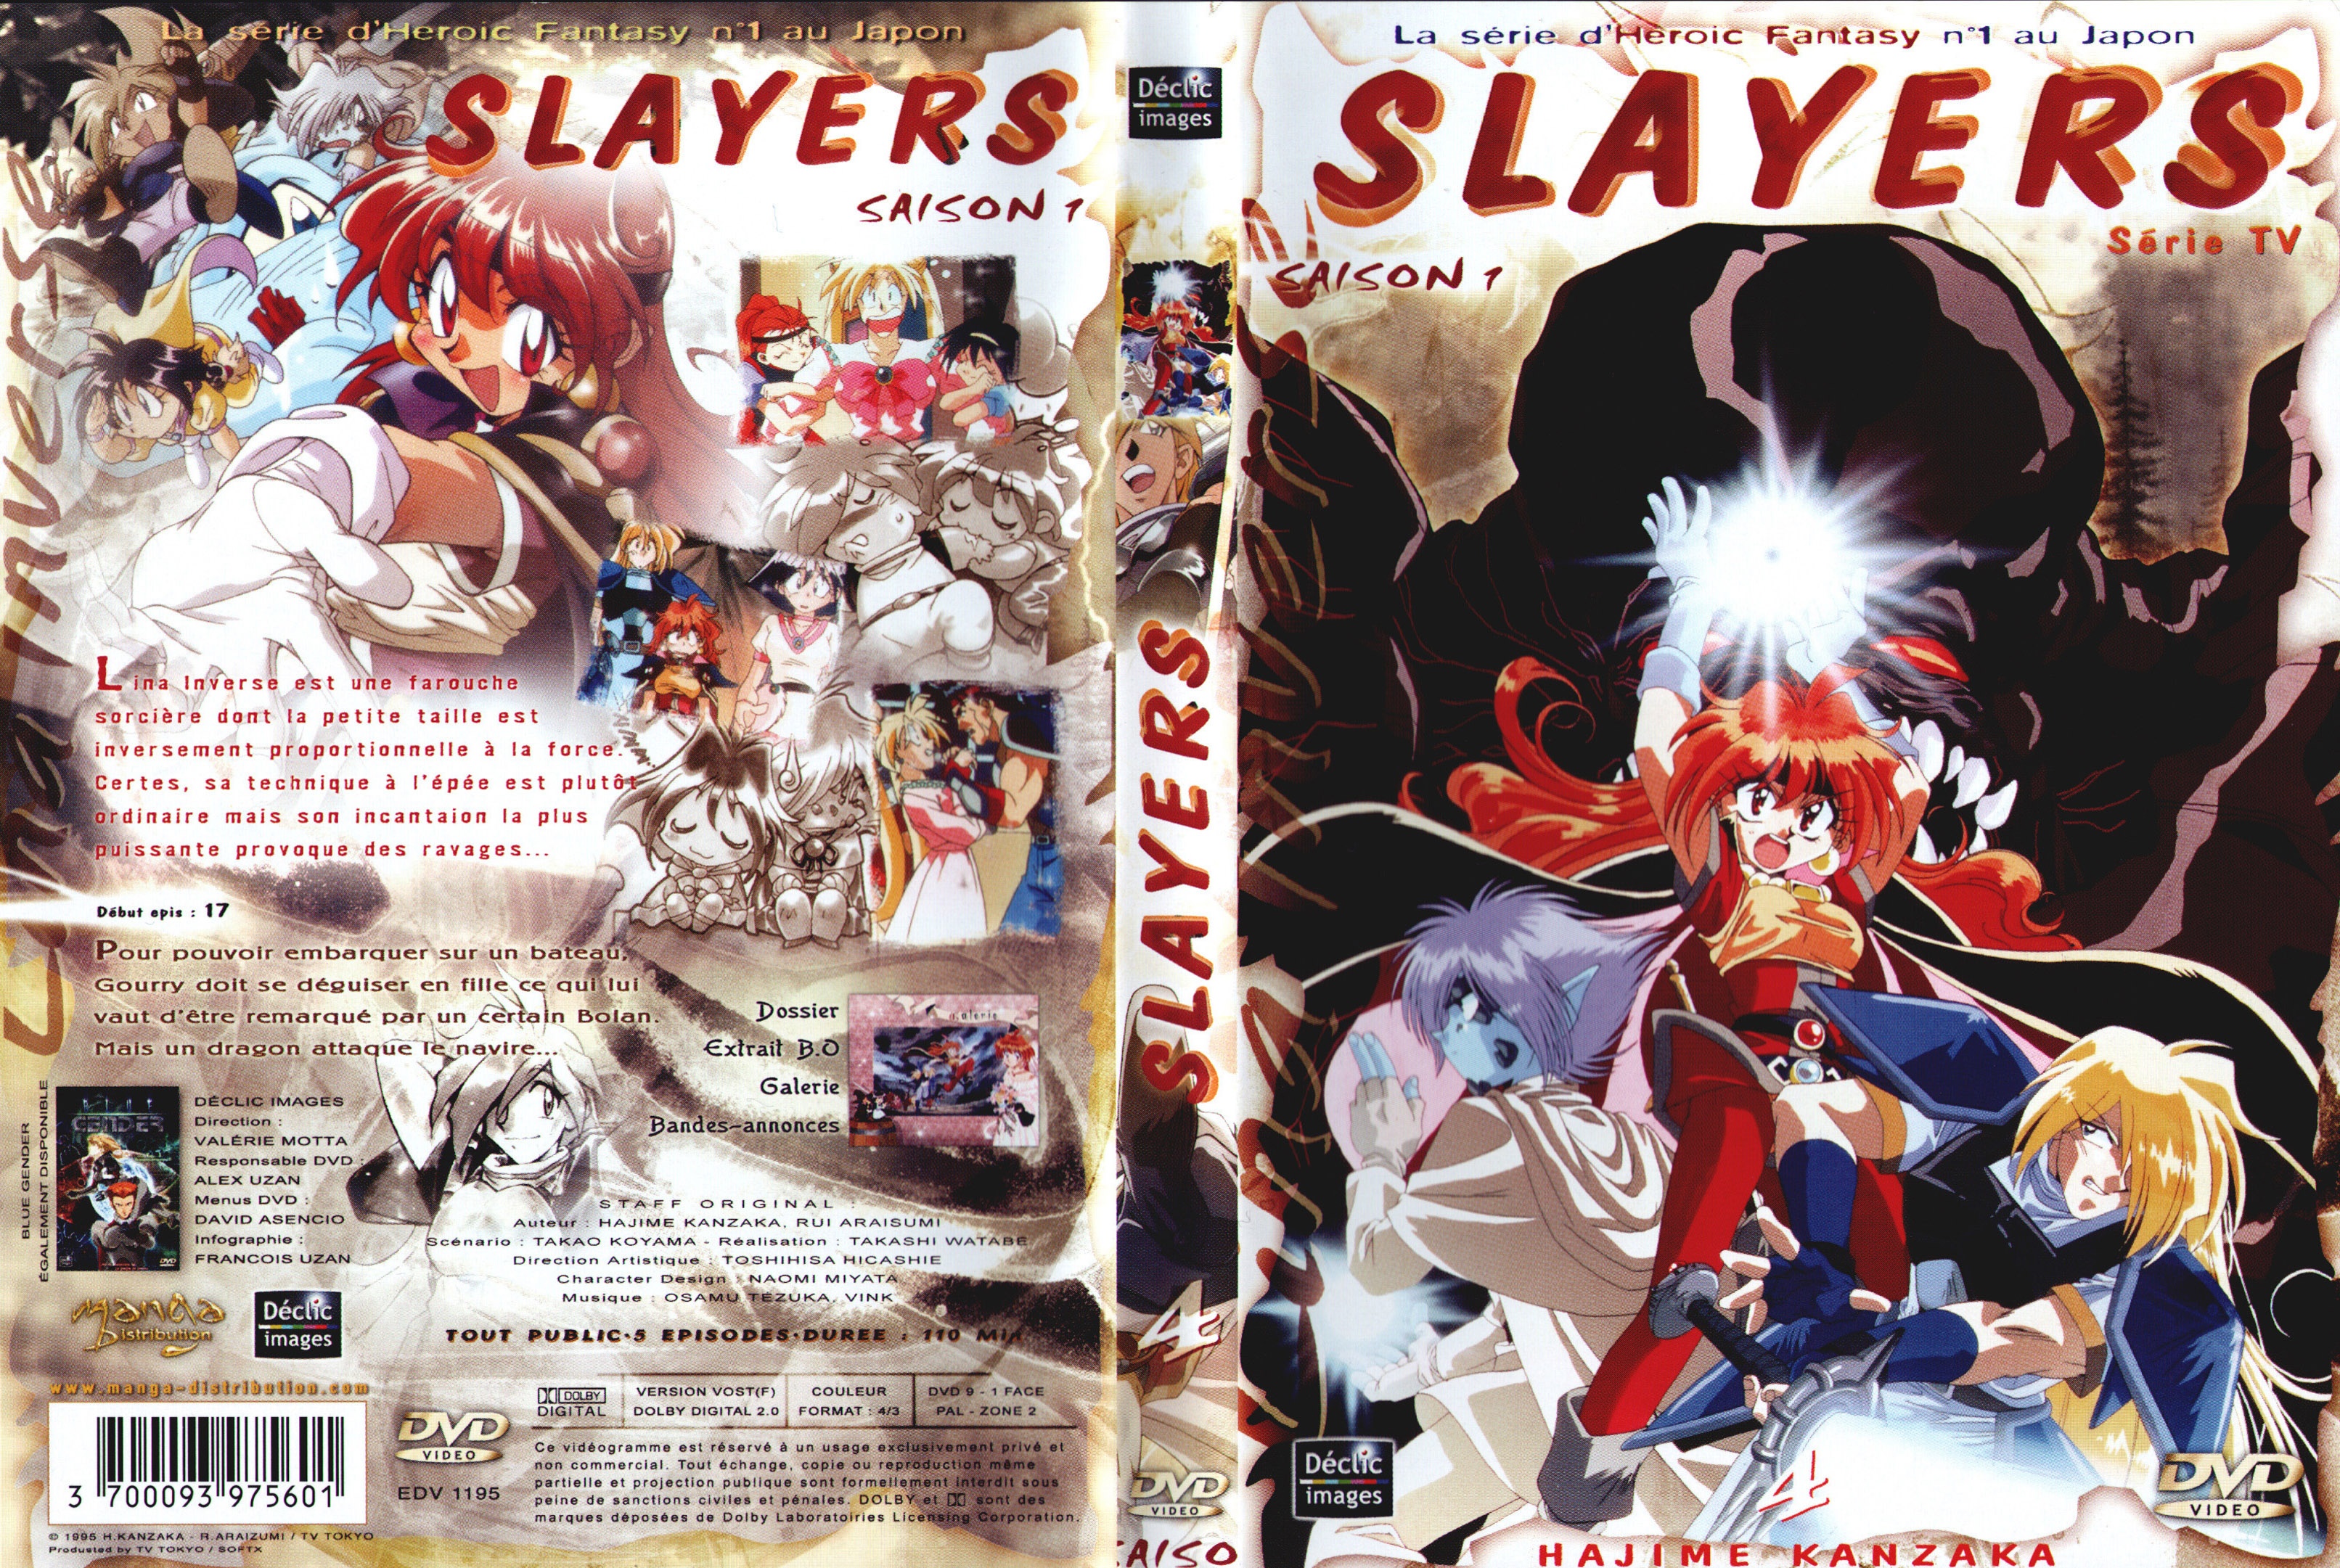 Jaquette DVD Slayers saison 1 DVD 4